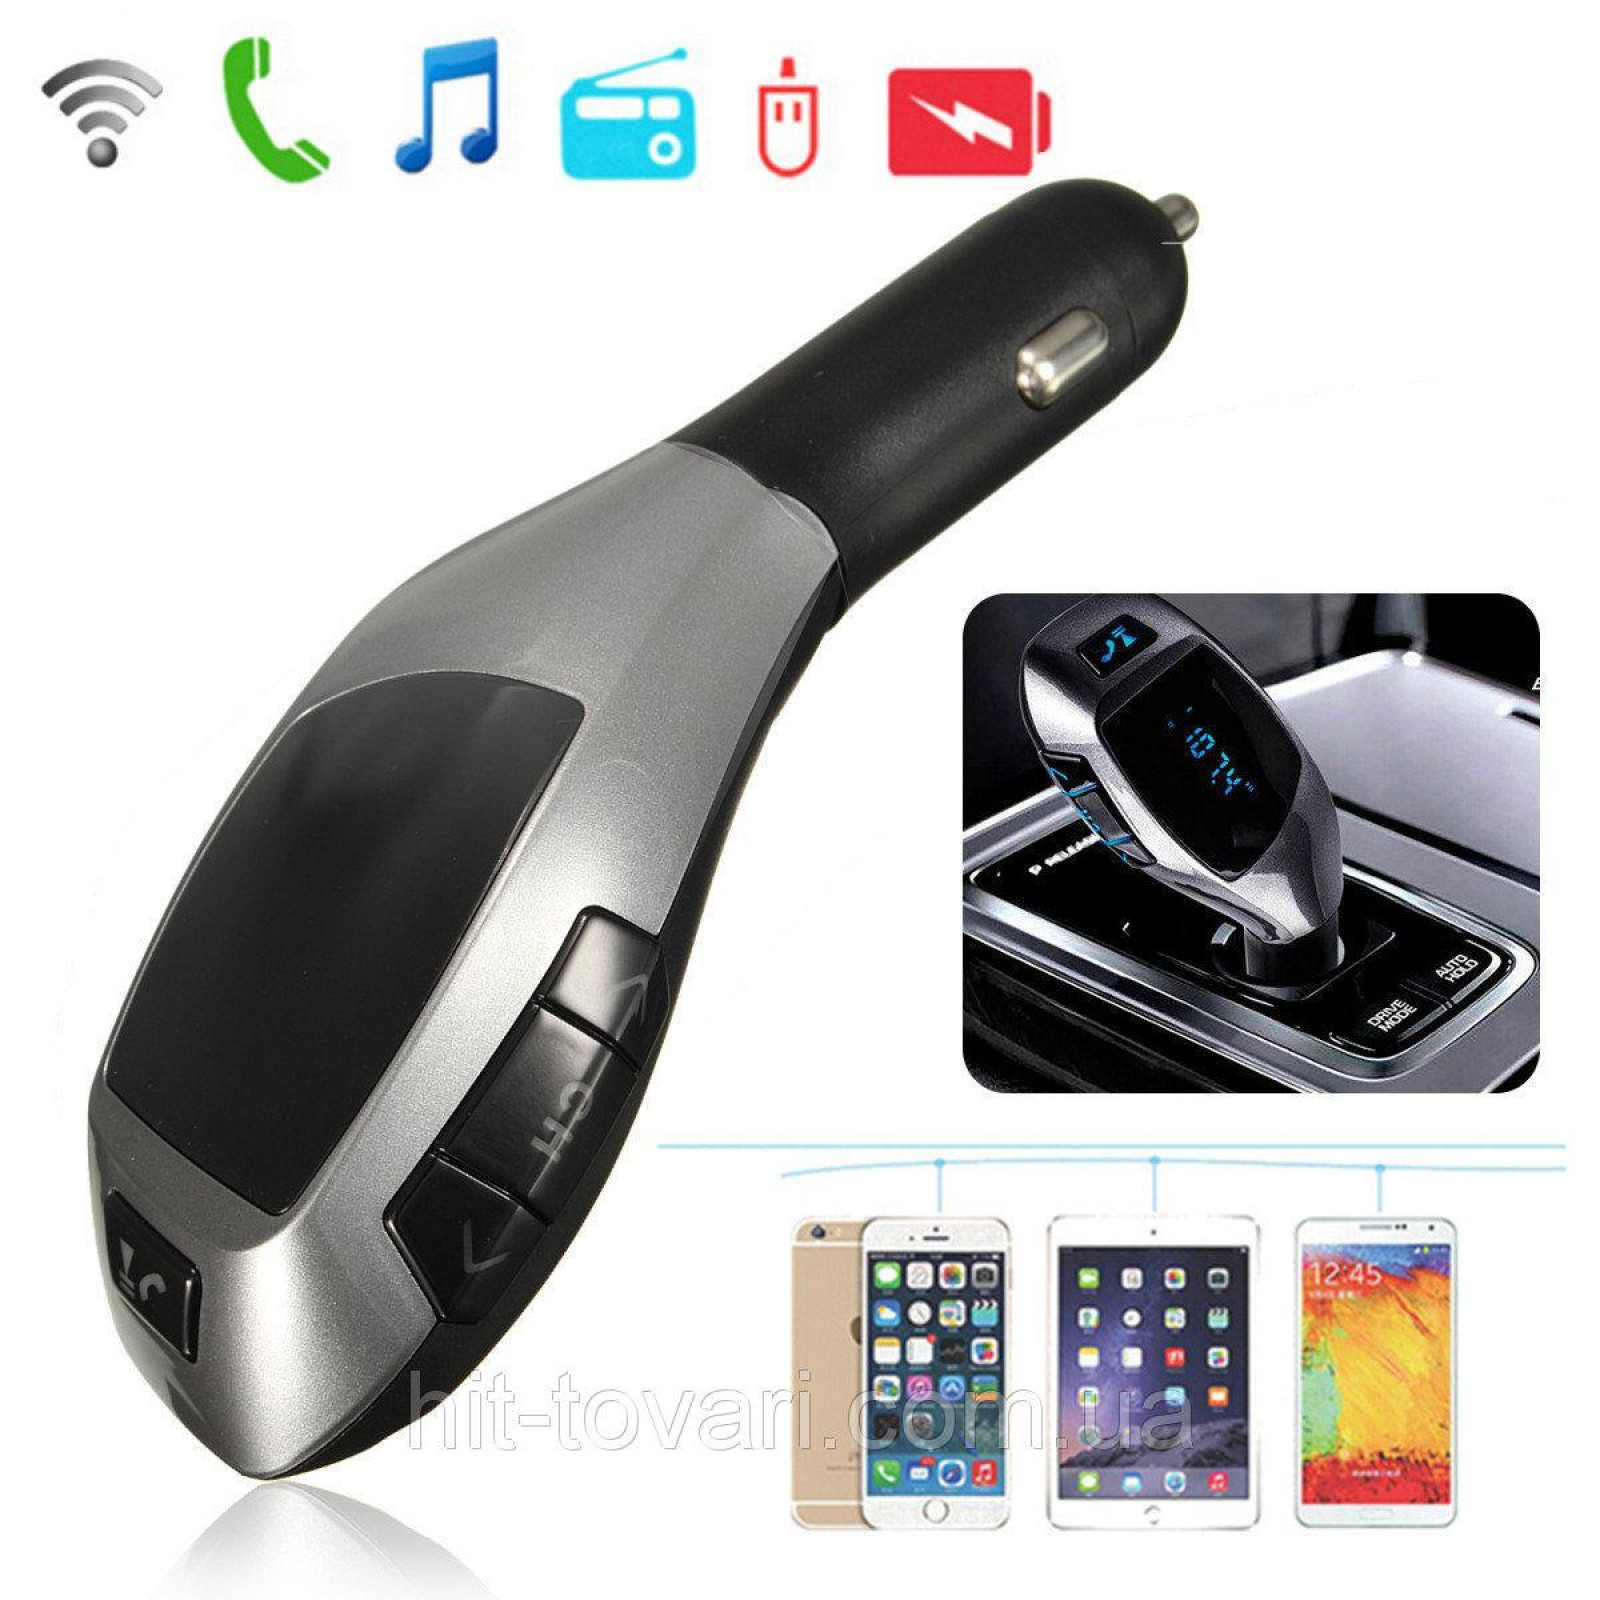 Автомобильный FM трансмиттер модулятор X5 Bluetooth MP3 Чёрный 130676